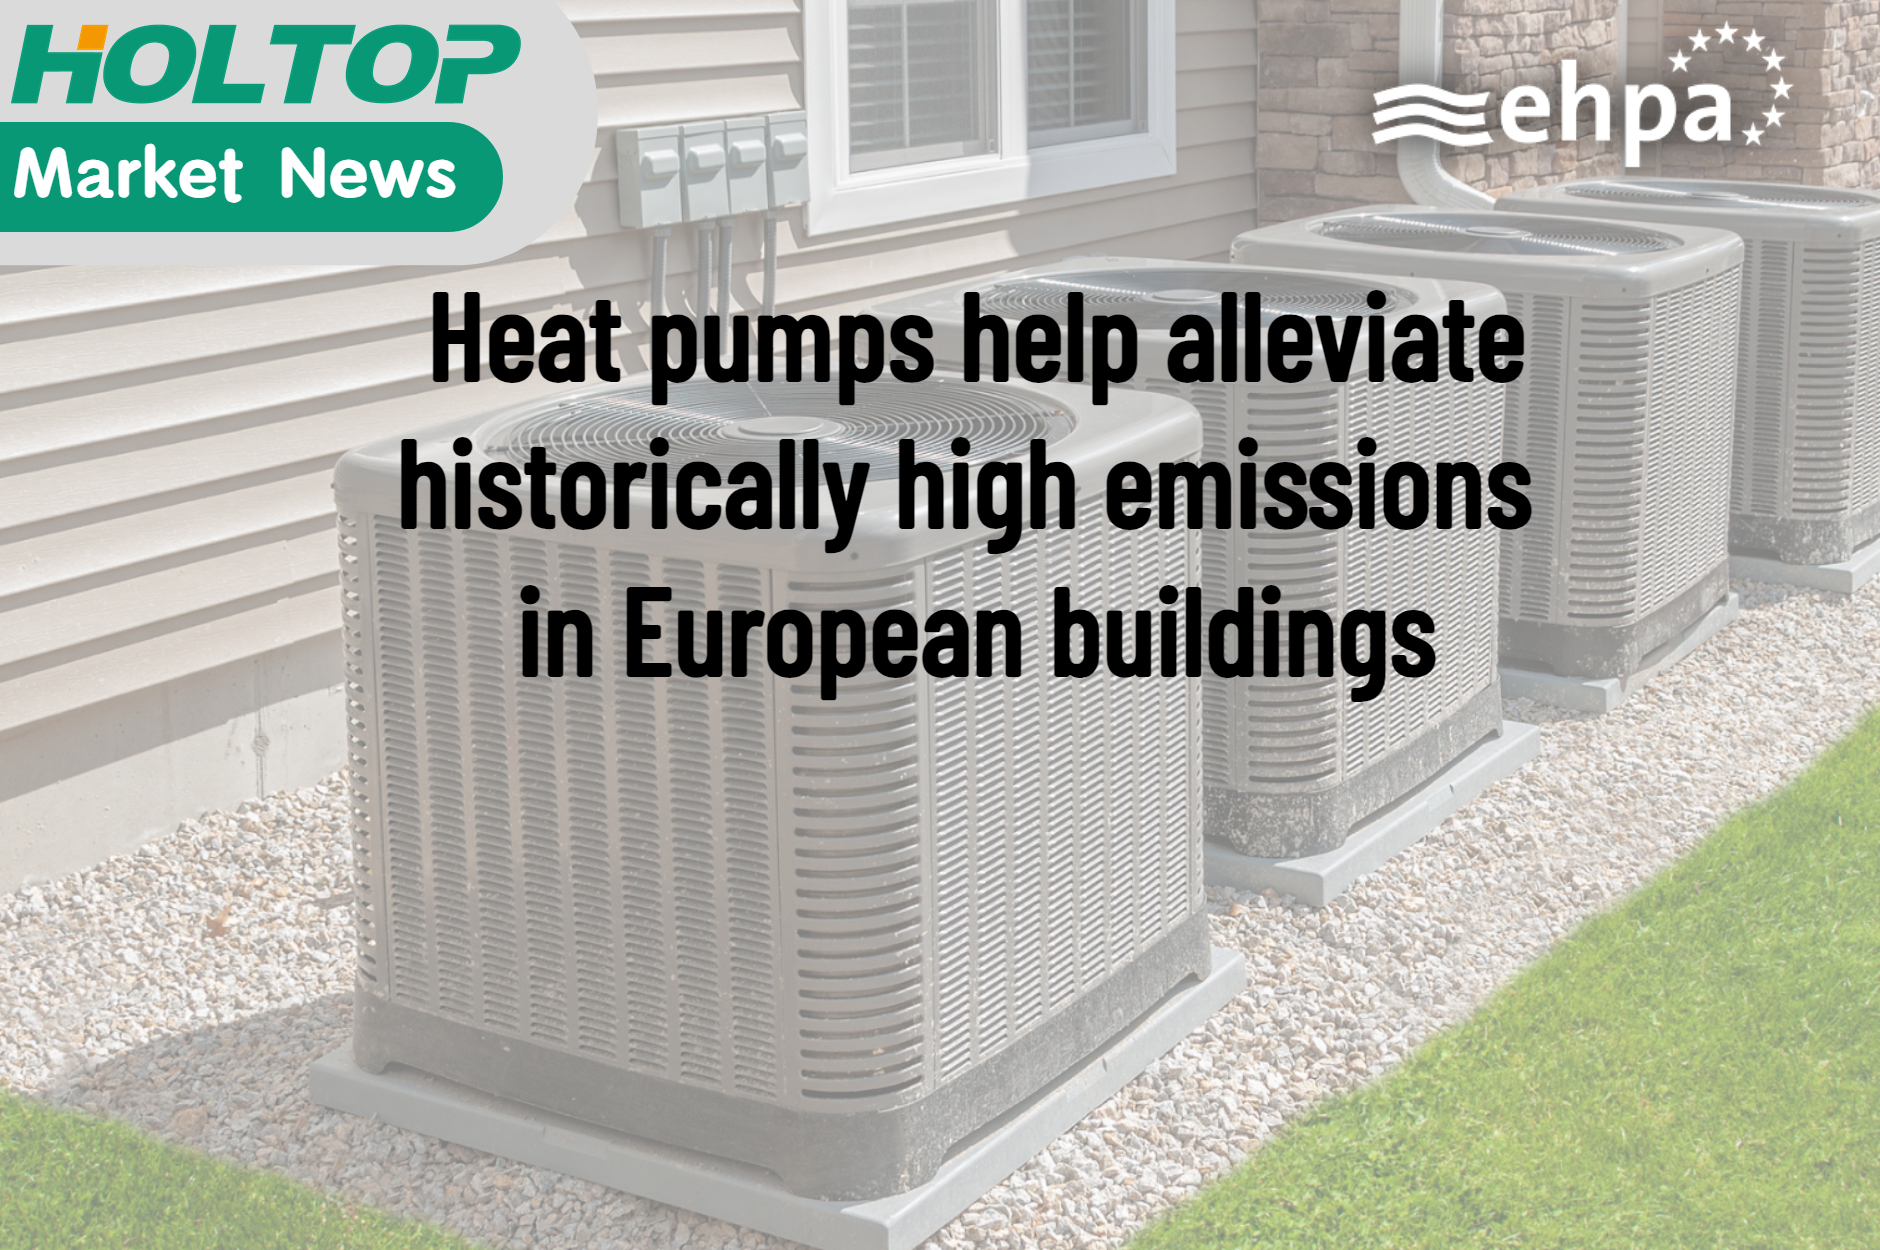 Bombas de calor ajudam a aliviar emissões historicamente altas em edifícios europeus